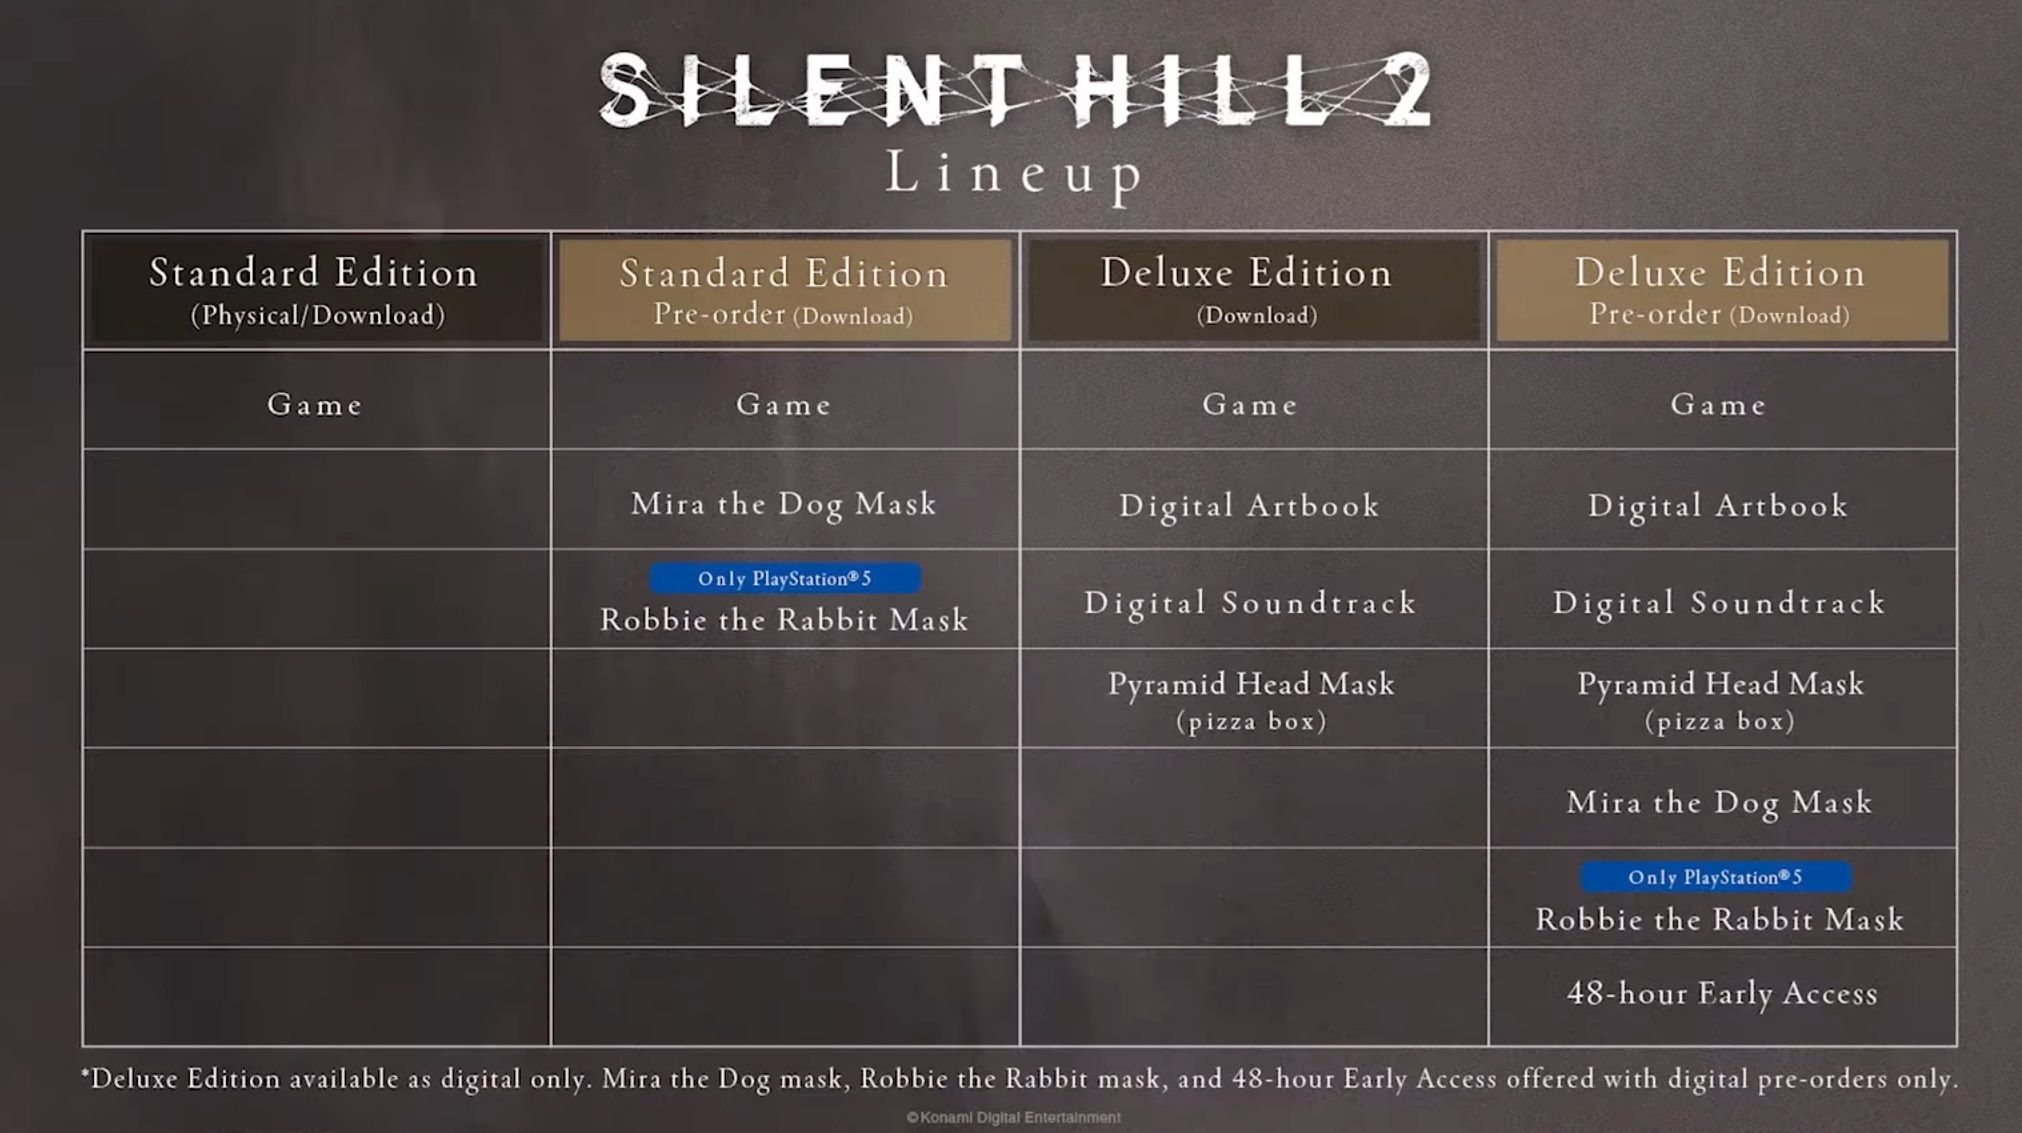 silent hill 2 version comparisons